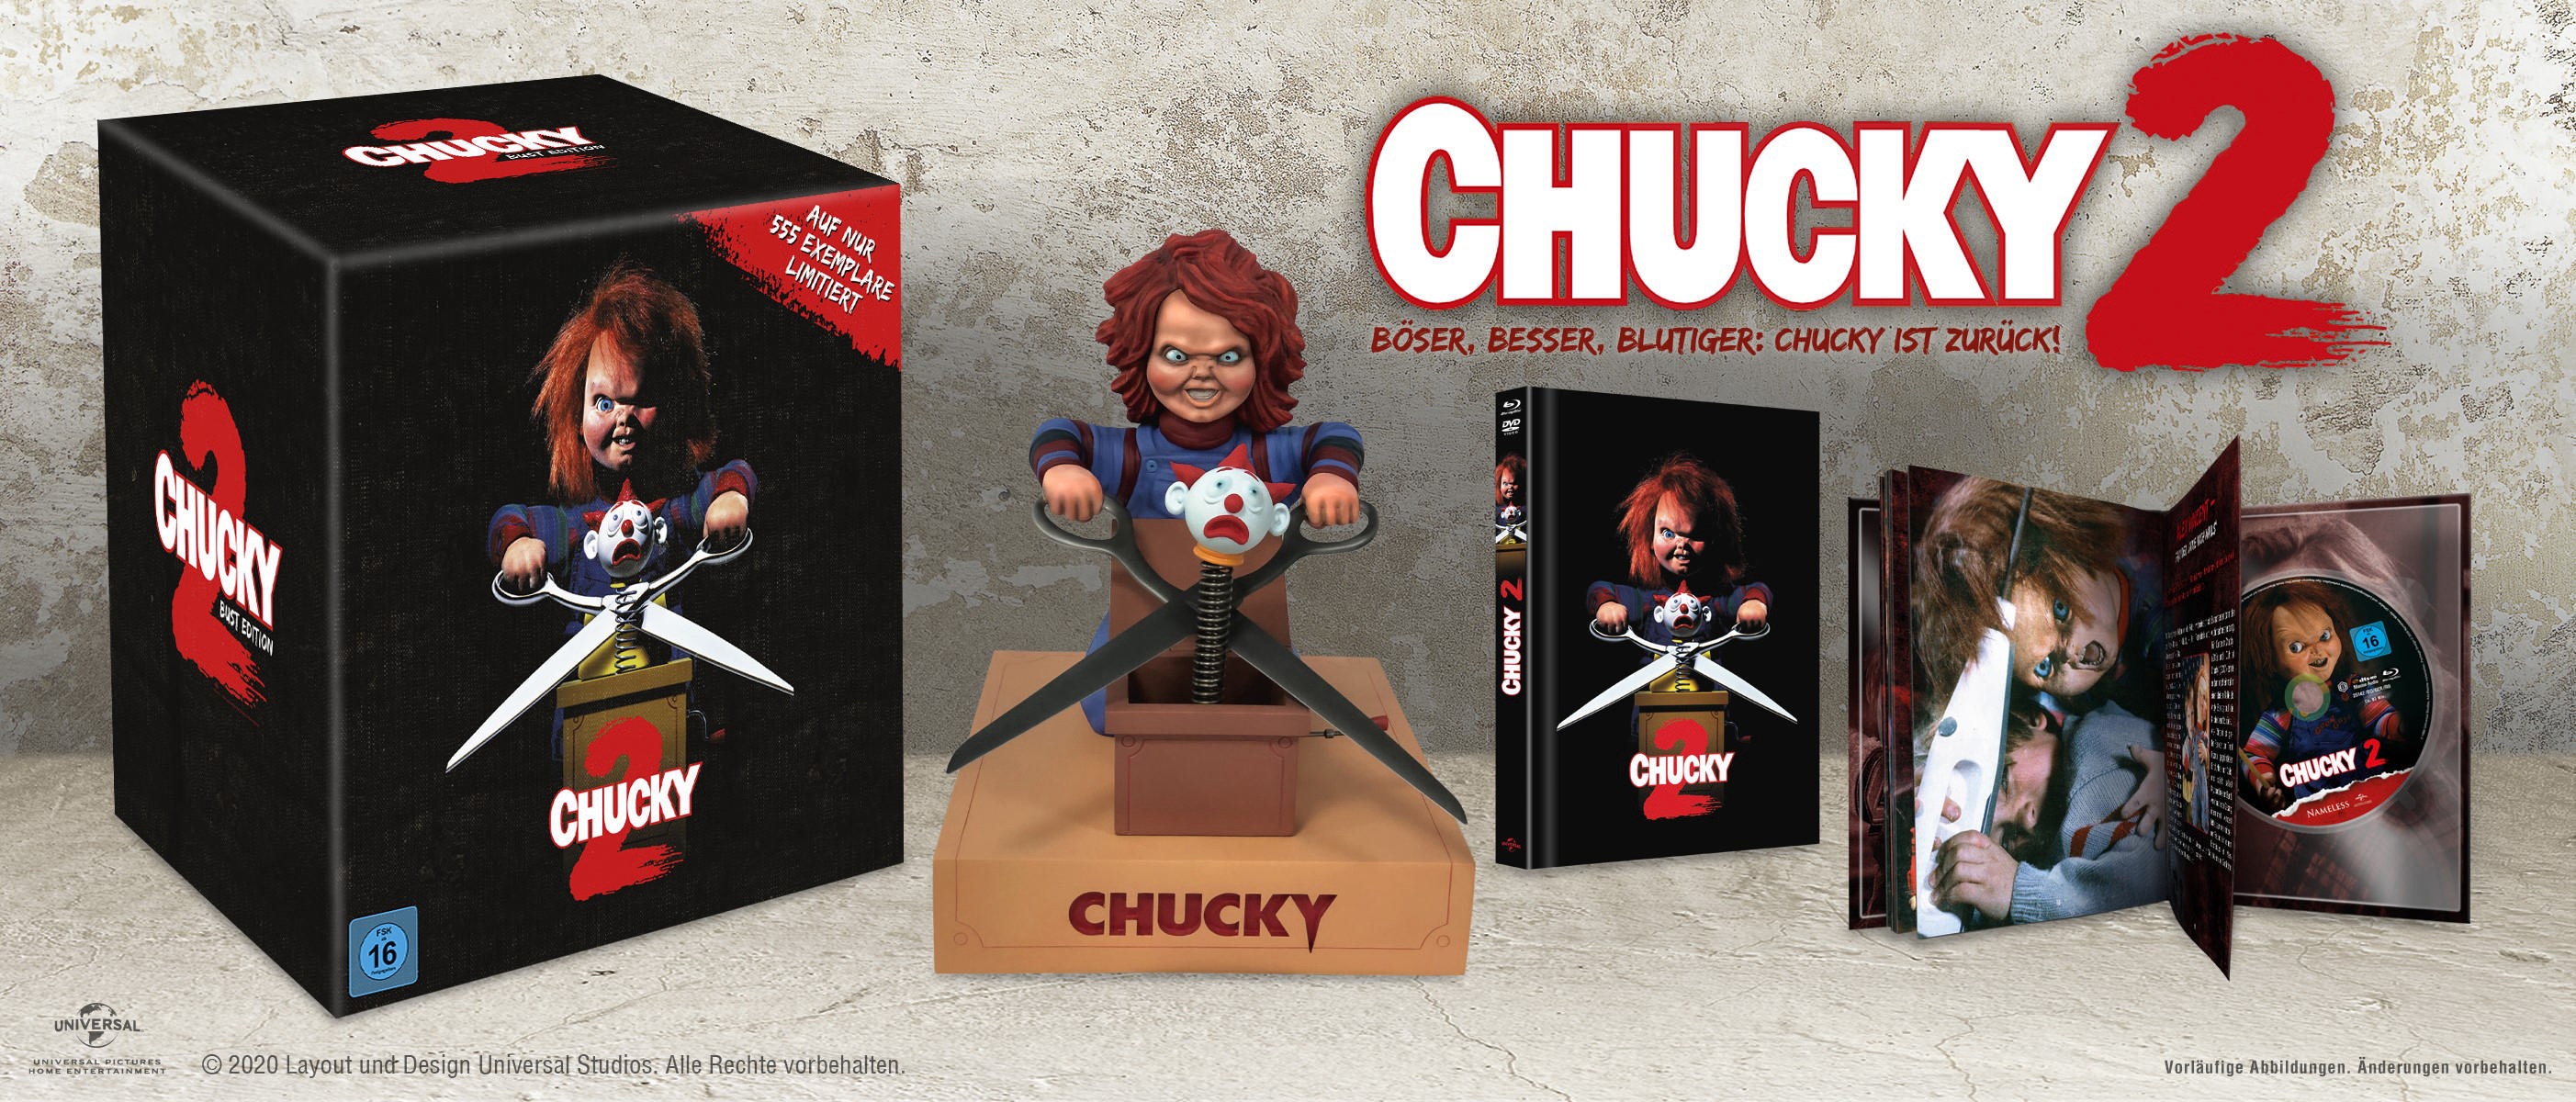 Chucky 2 - Die Blu-ray + DVD zurück! Mörderpuppe ist